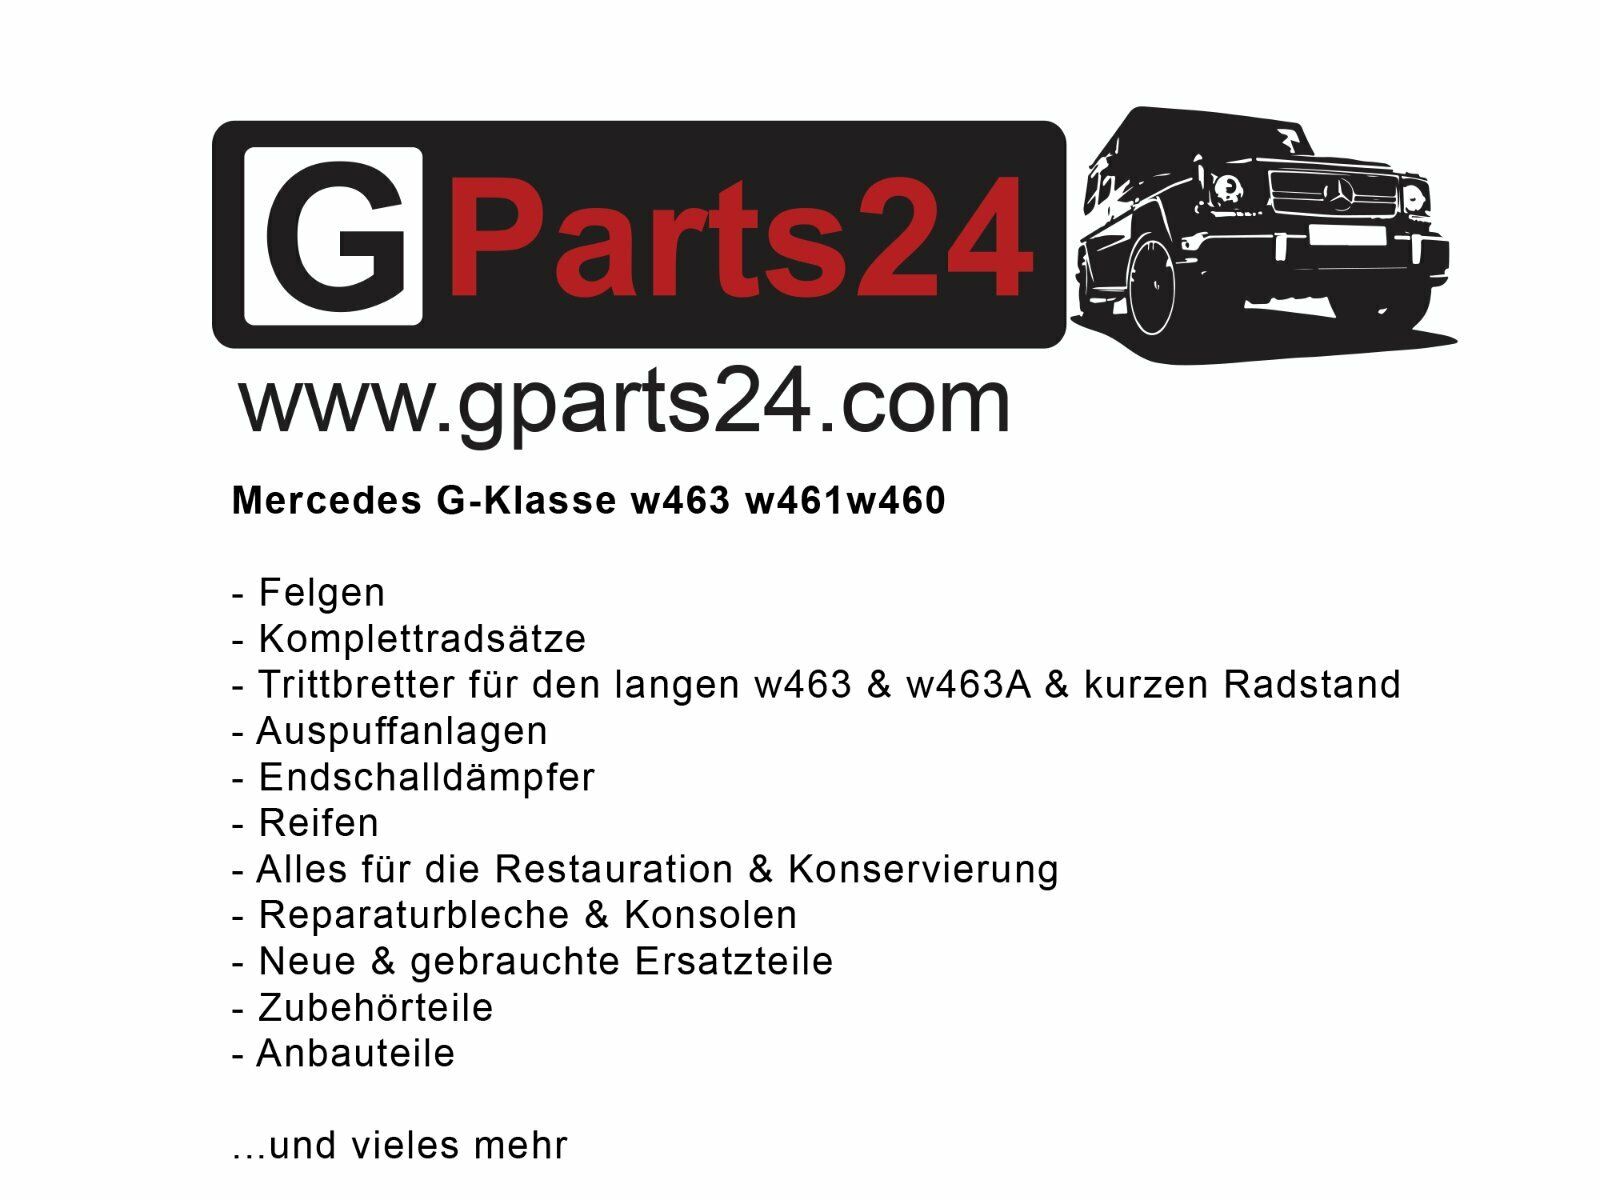 Puch Gurtschloss Archive - GParts24 - Webshop für Mercedes G-Klasse w463  Trittbretter und Felgen.